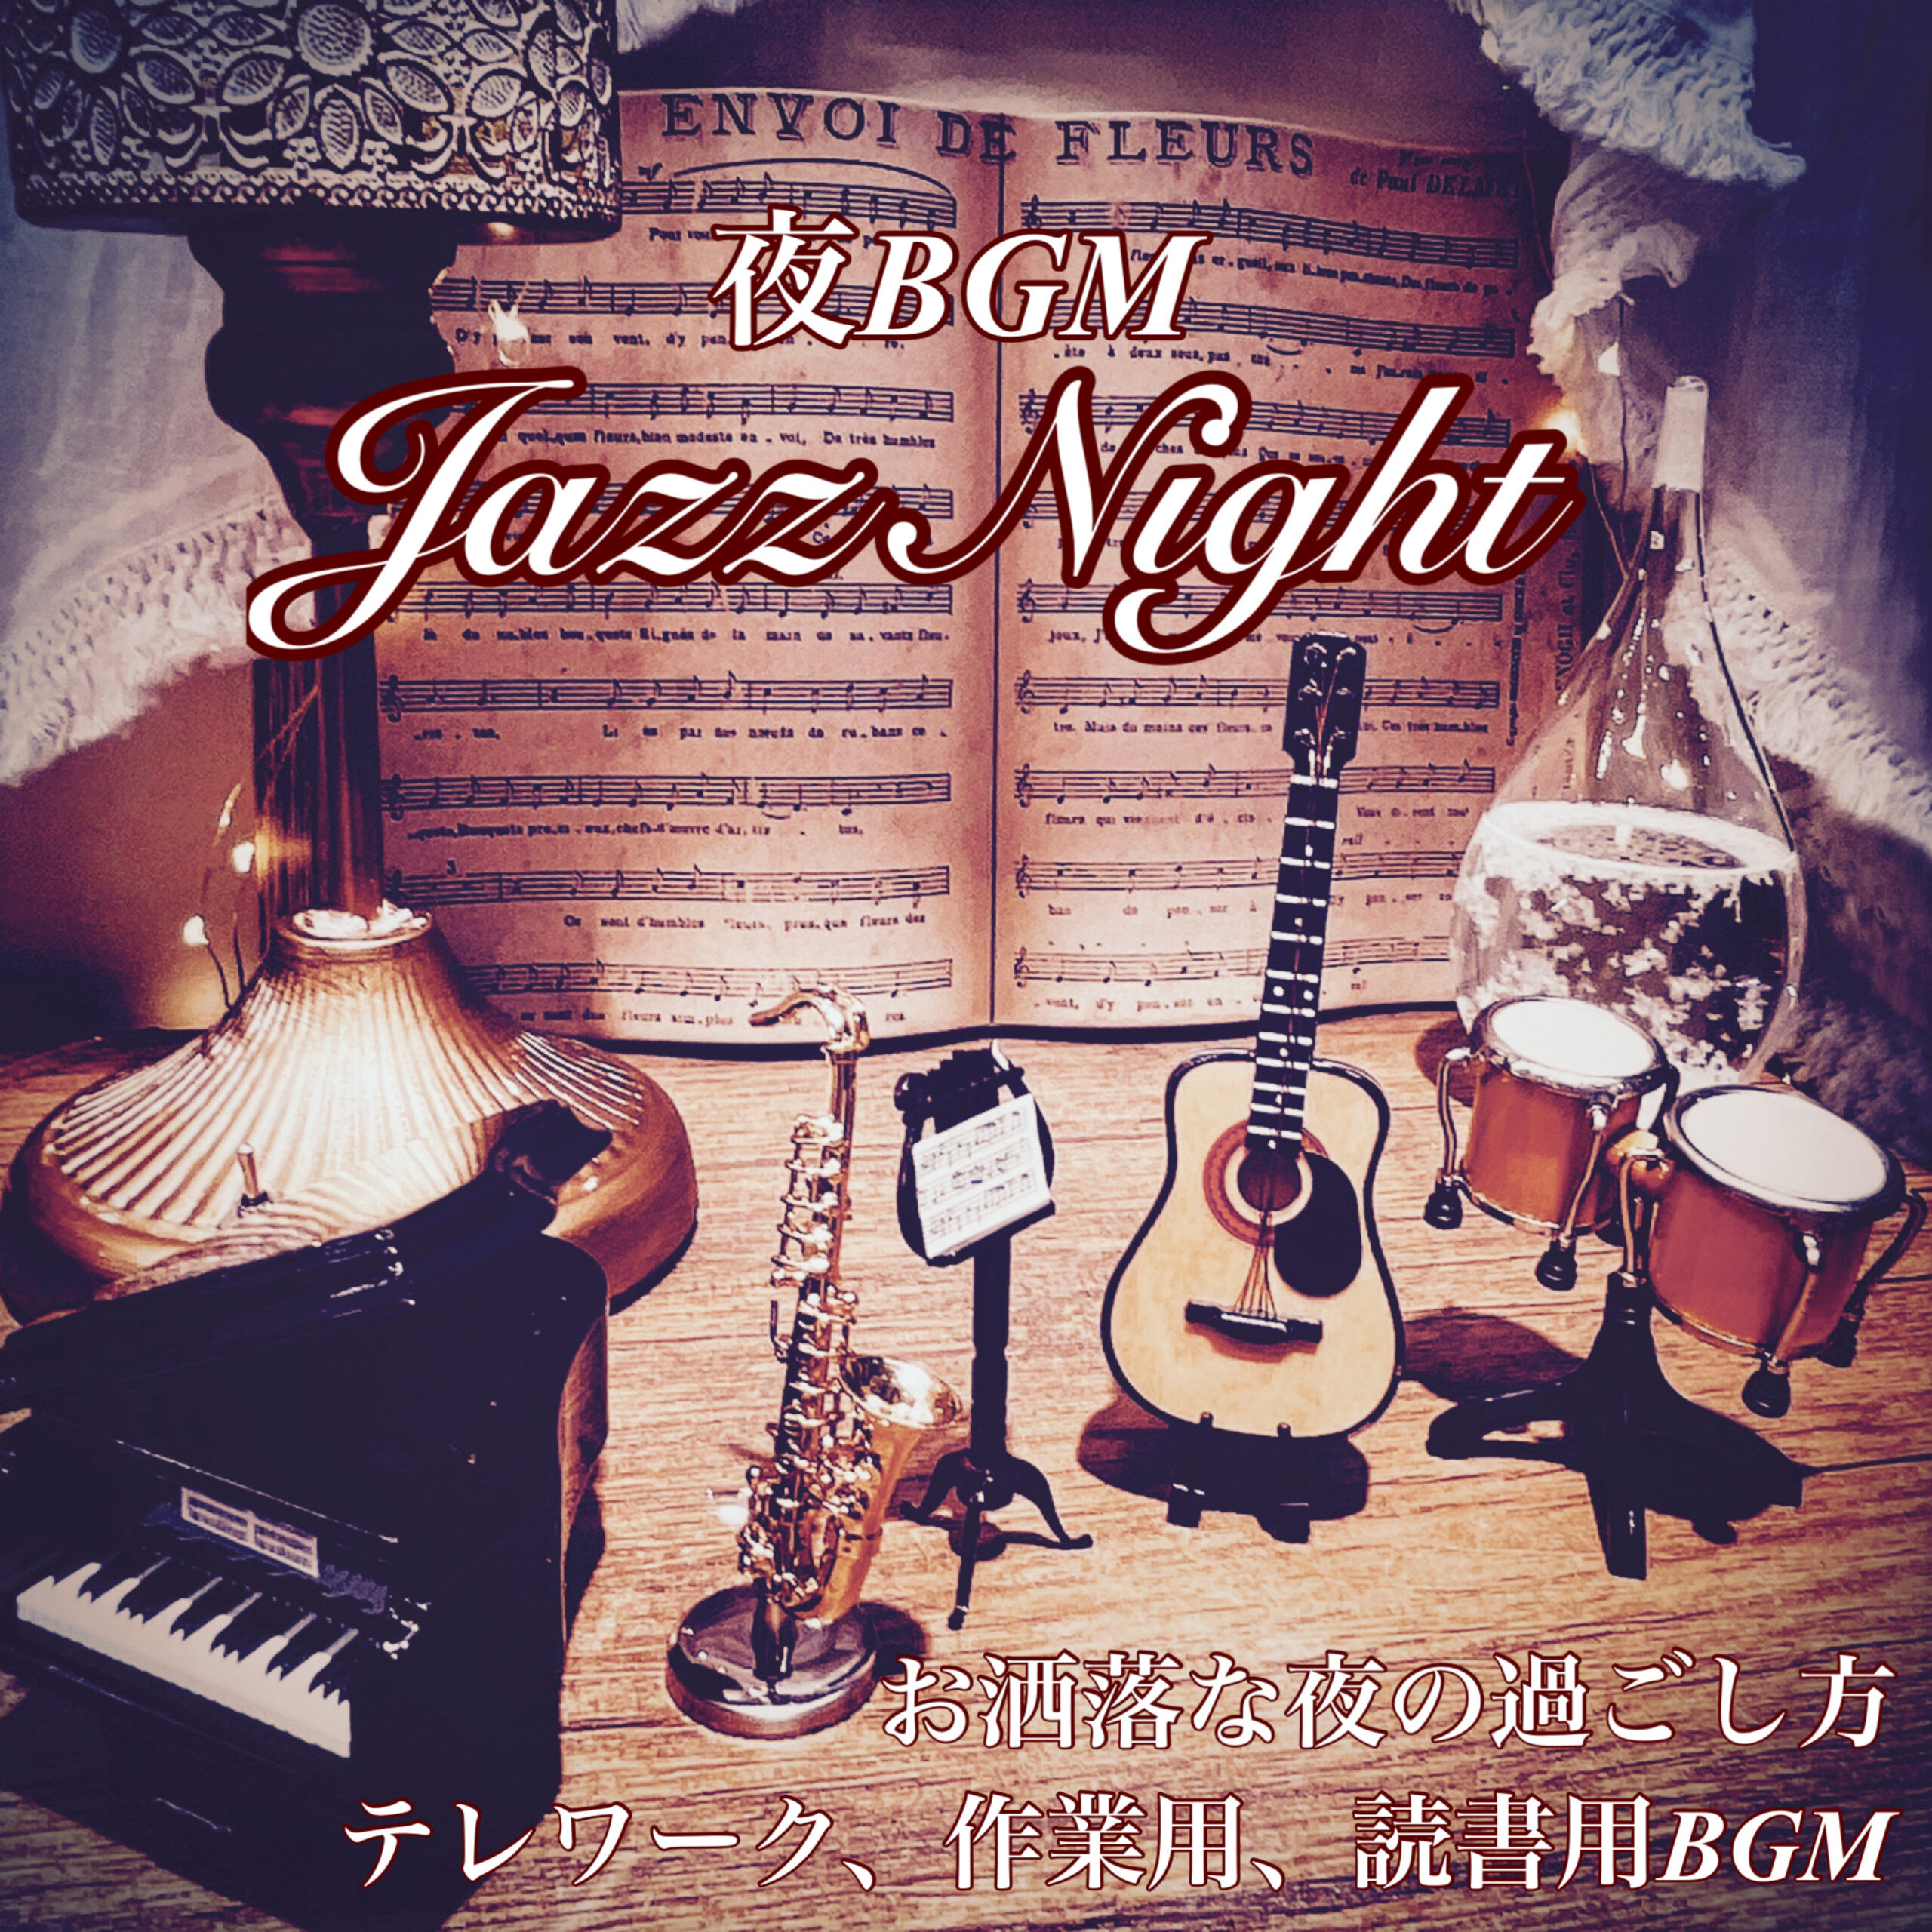 夜BGM JazzNight お洒落な夜の過ごし方 テレワーク、作業用、読書用BGM